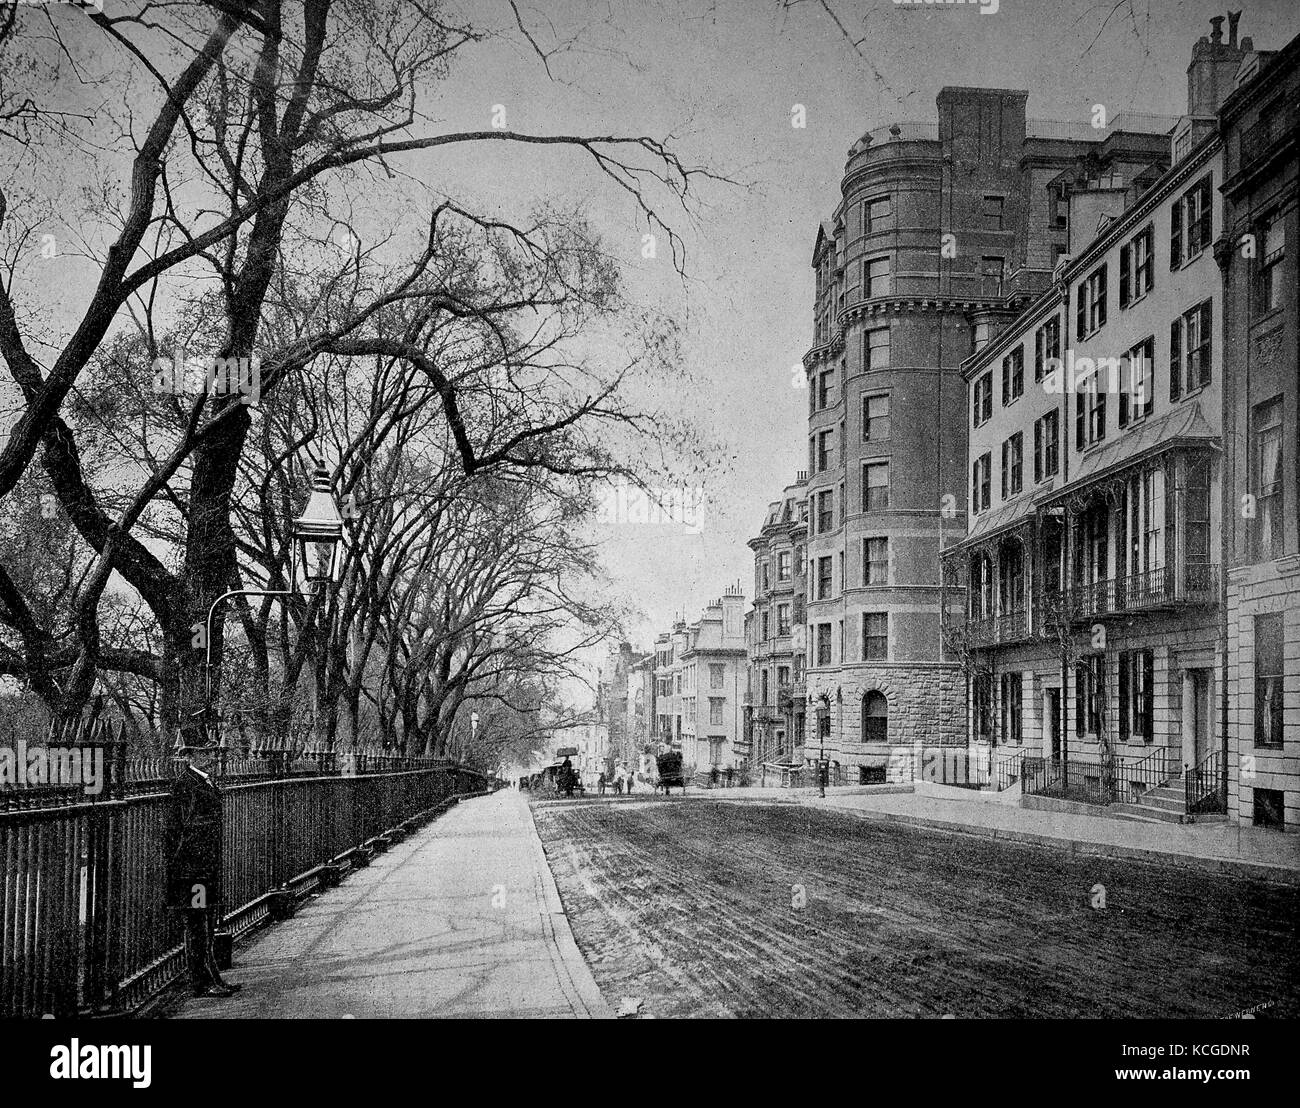 États-unis d'Amérique, de la construction et de scène de rue de Beacon Street à Boston, l'état de Massachussetts, amélioration numérique reproduction d'une photo historique de l'année 1899 (estimé) Banque D'Images